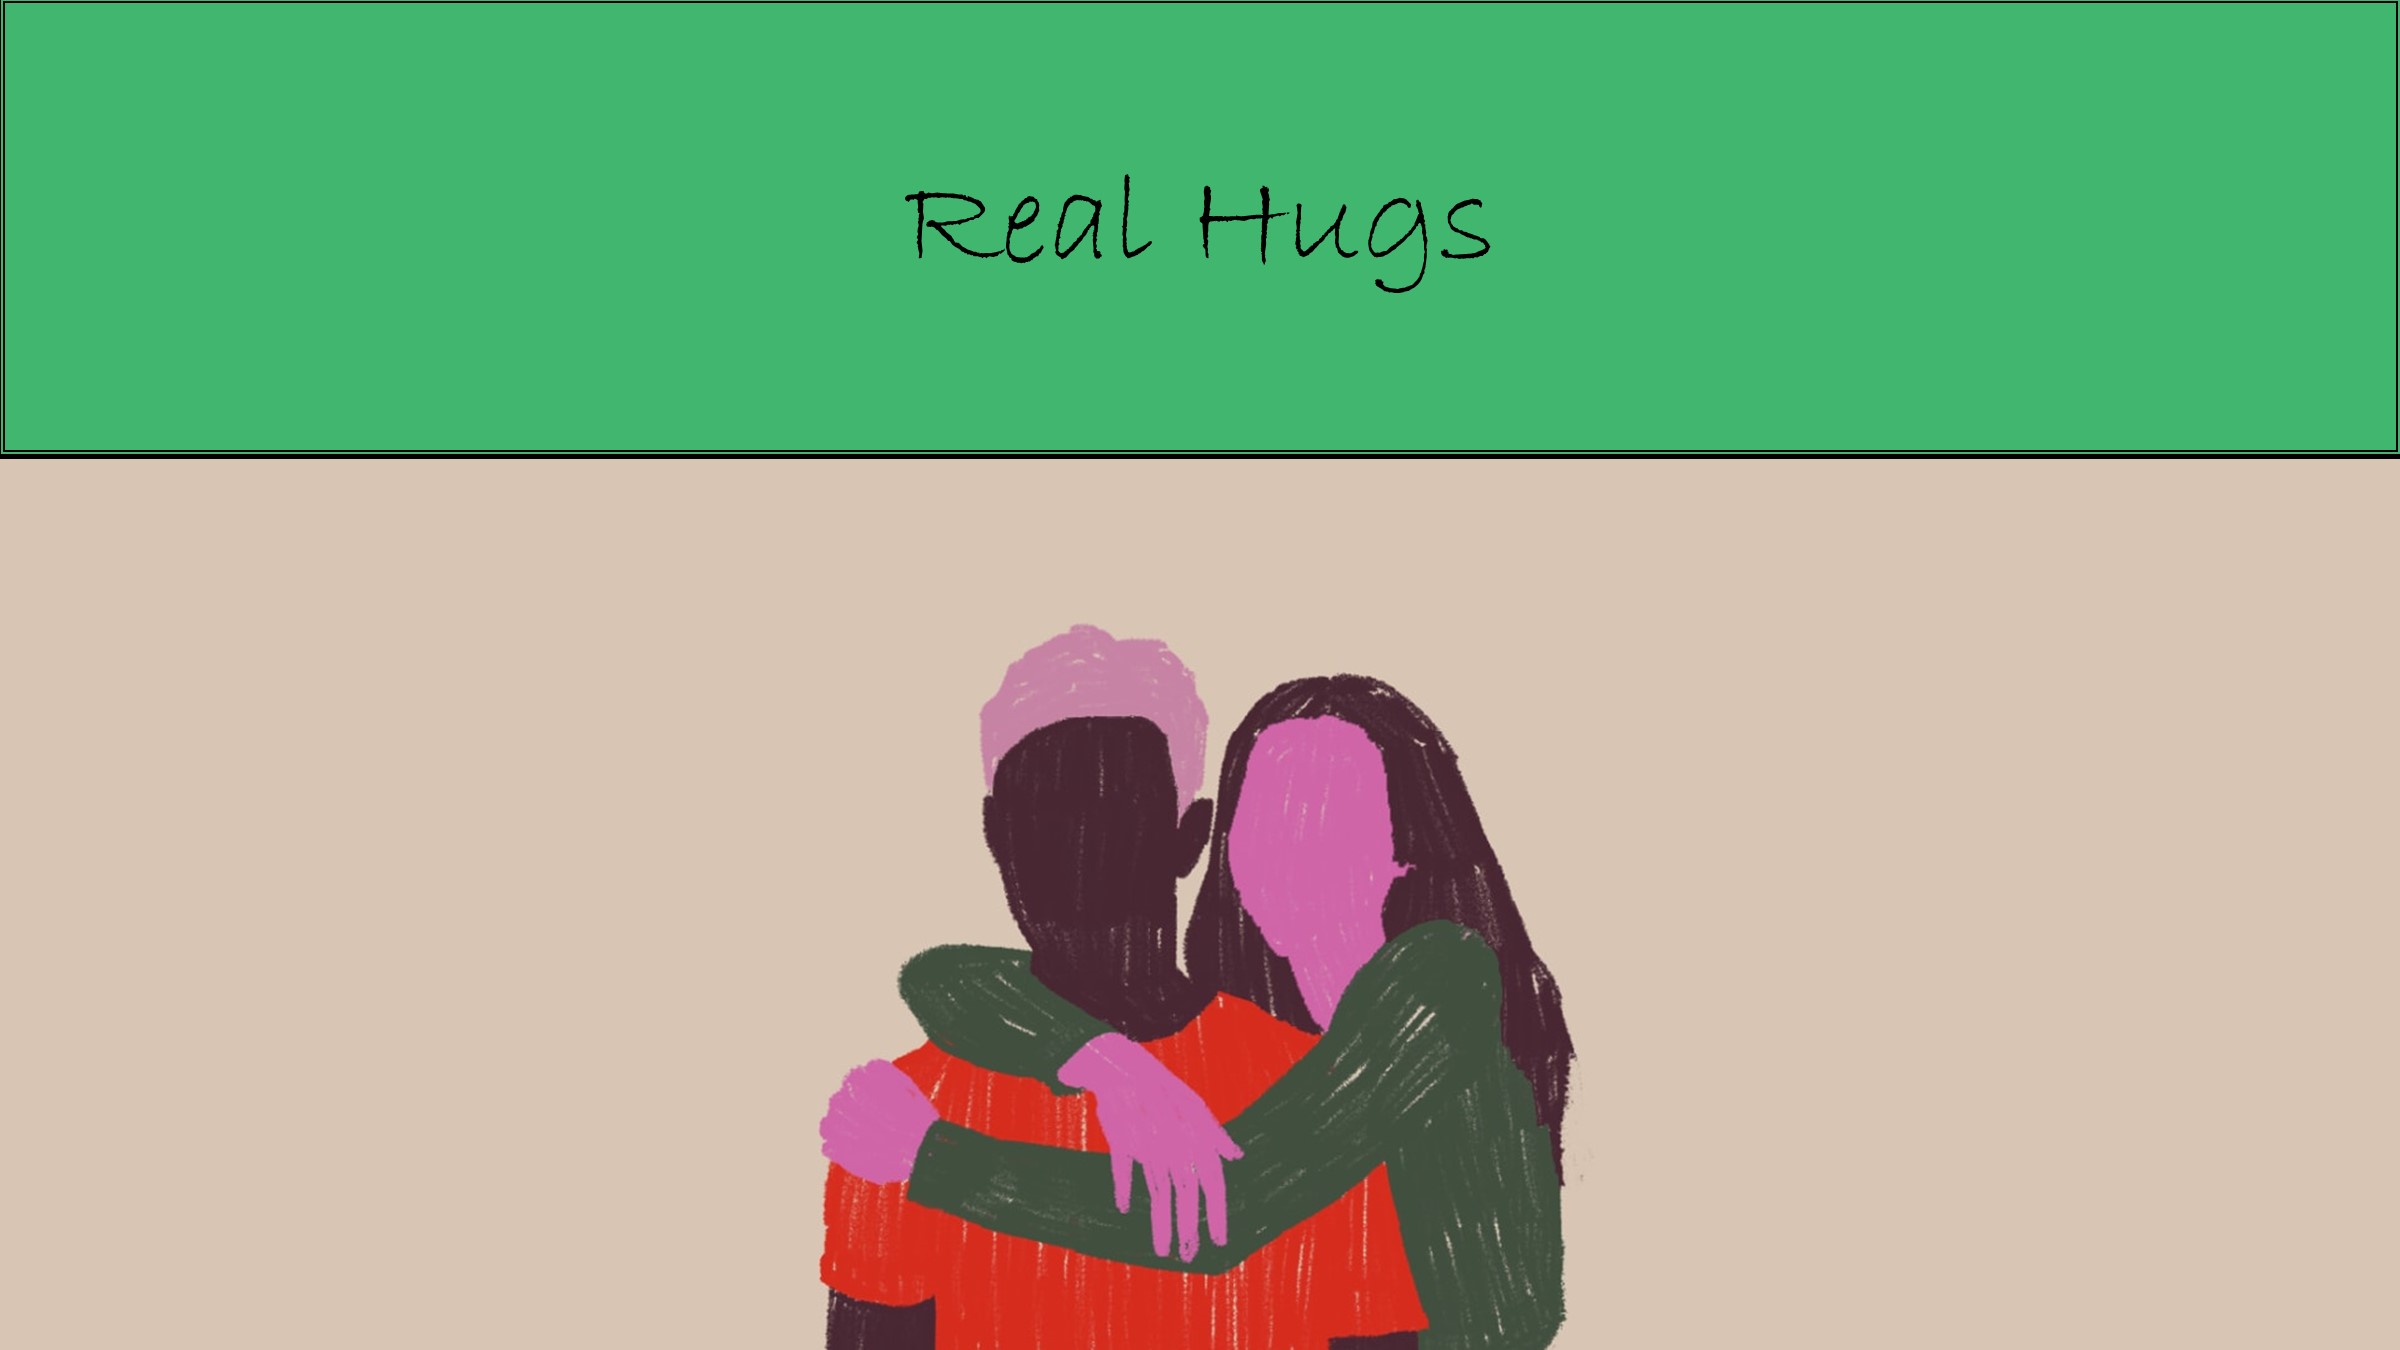 Real Hugs (thank you, John Lennon!)